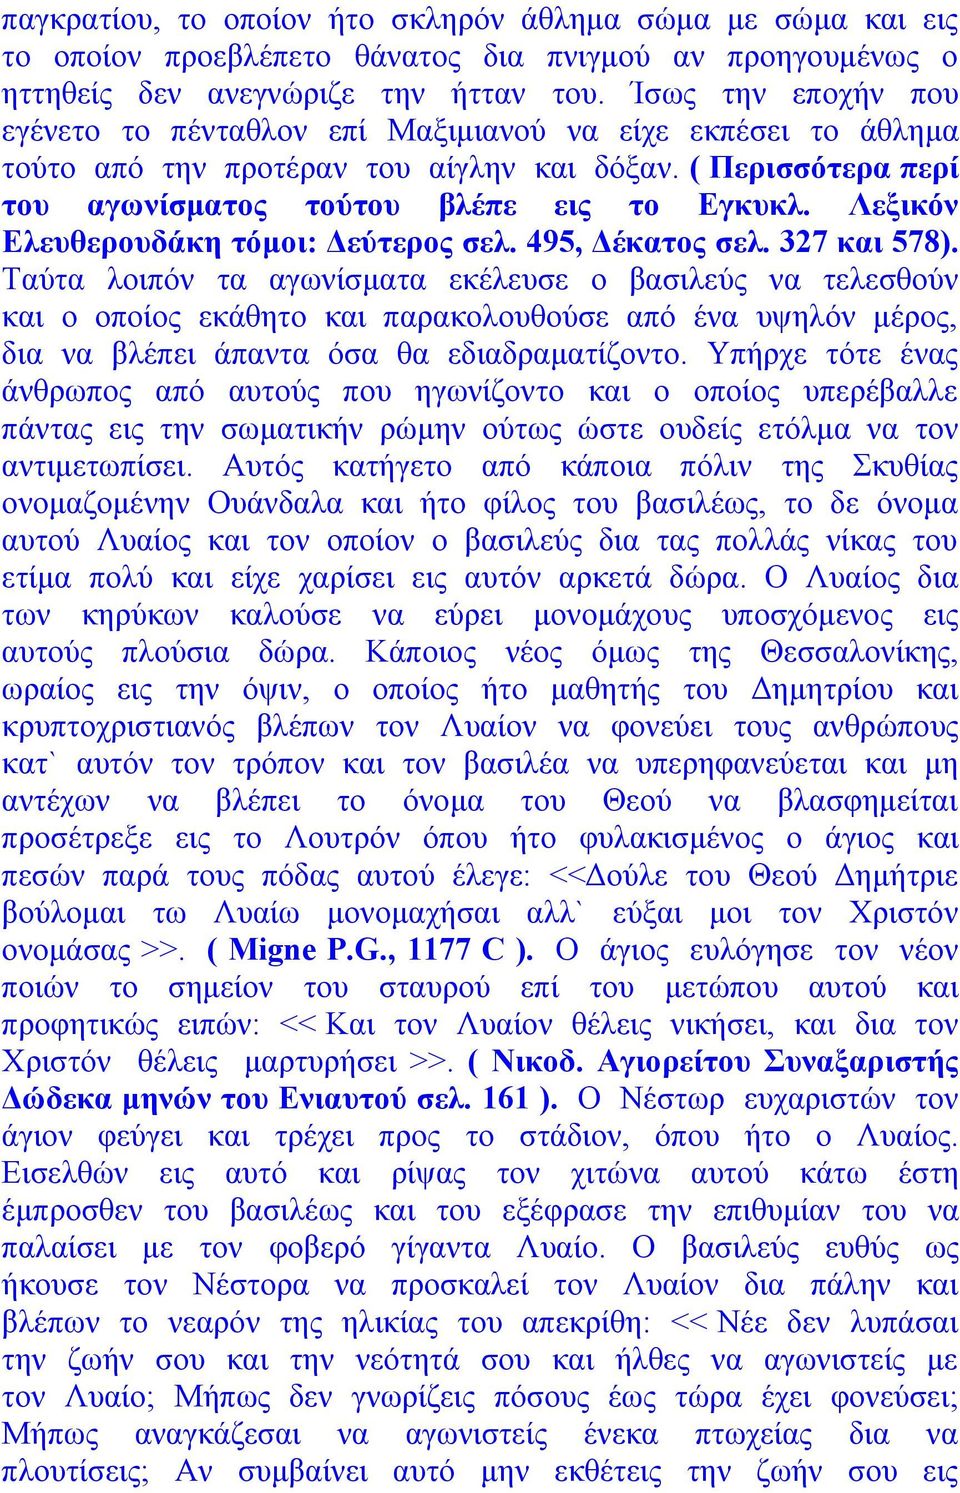 Λεξικόν Ελευθερουδάκη τόμοι: Δεύτερος σελ. 495, Δέκατος σελ. 327 και 578).